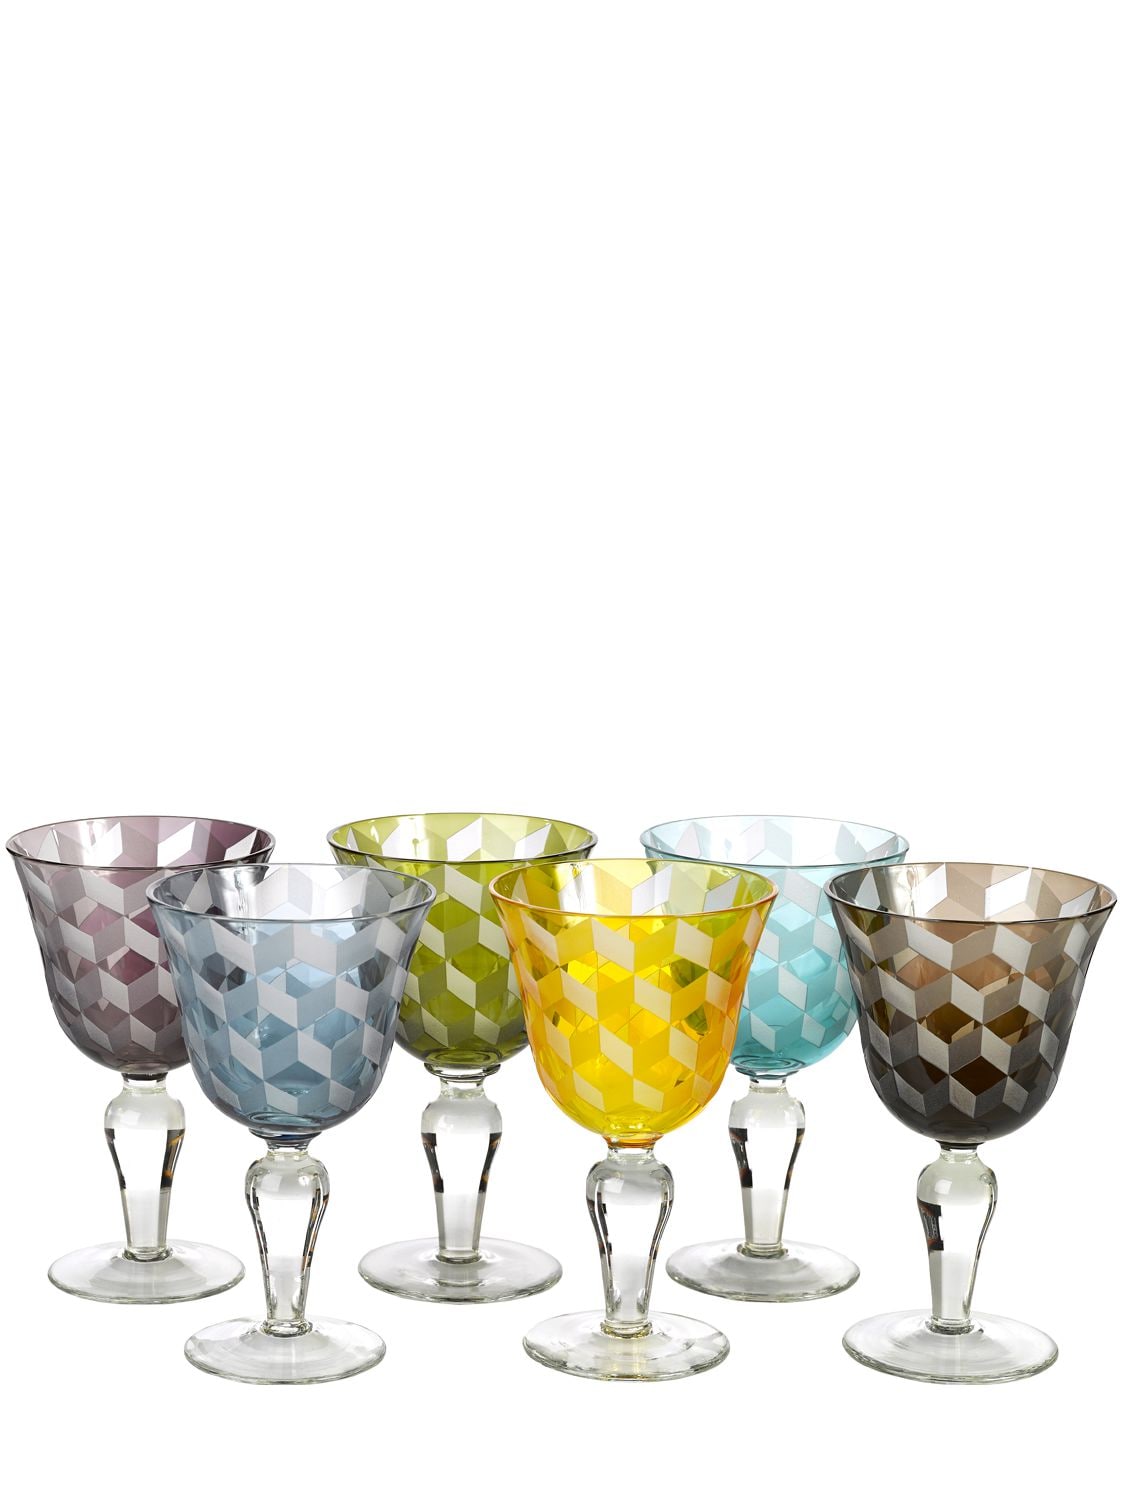 Pols Potten Set Of 6 Blocks Multi-color Wine Glasses In Multicolor